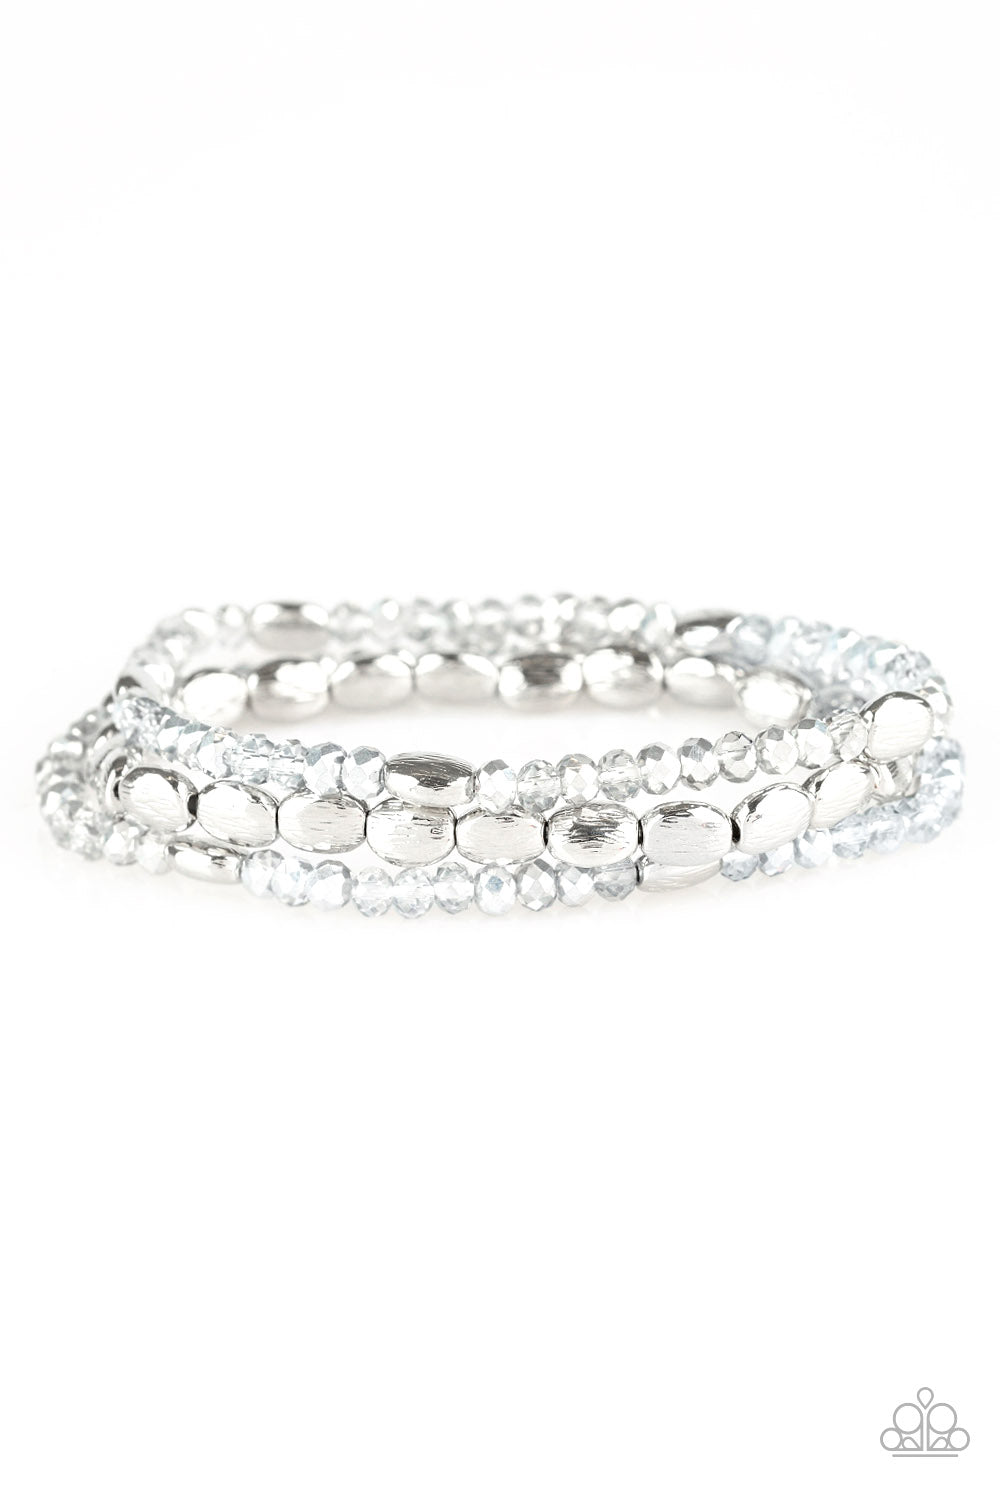 Hello Beautiful - Silver Bracelet